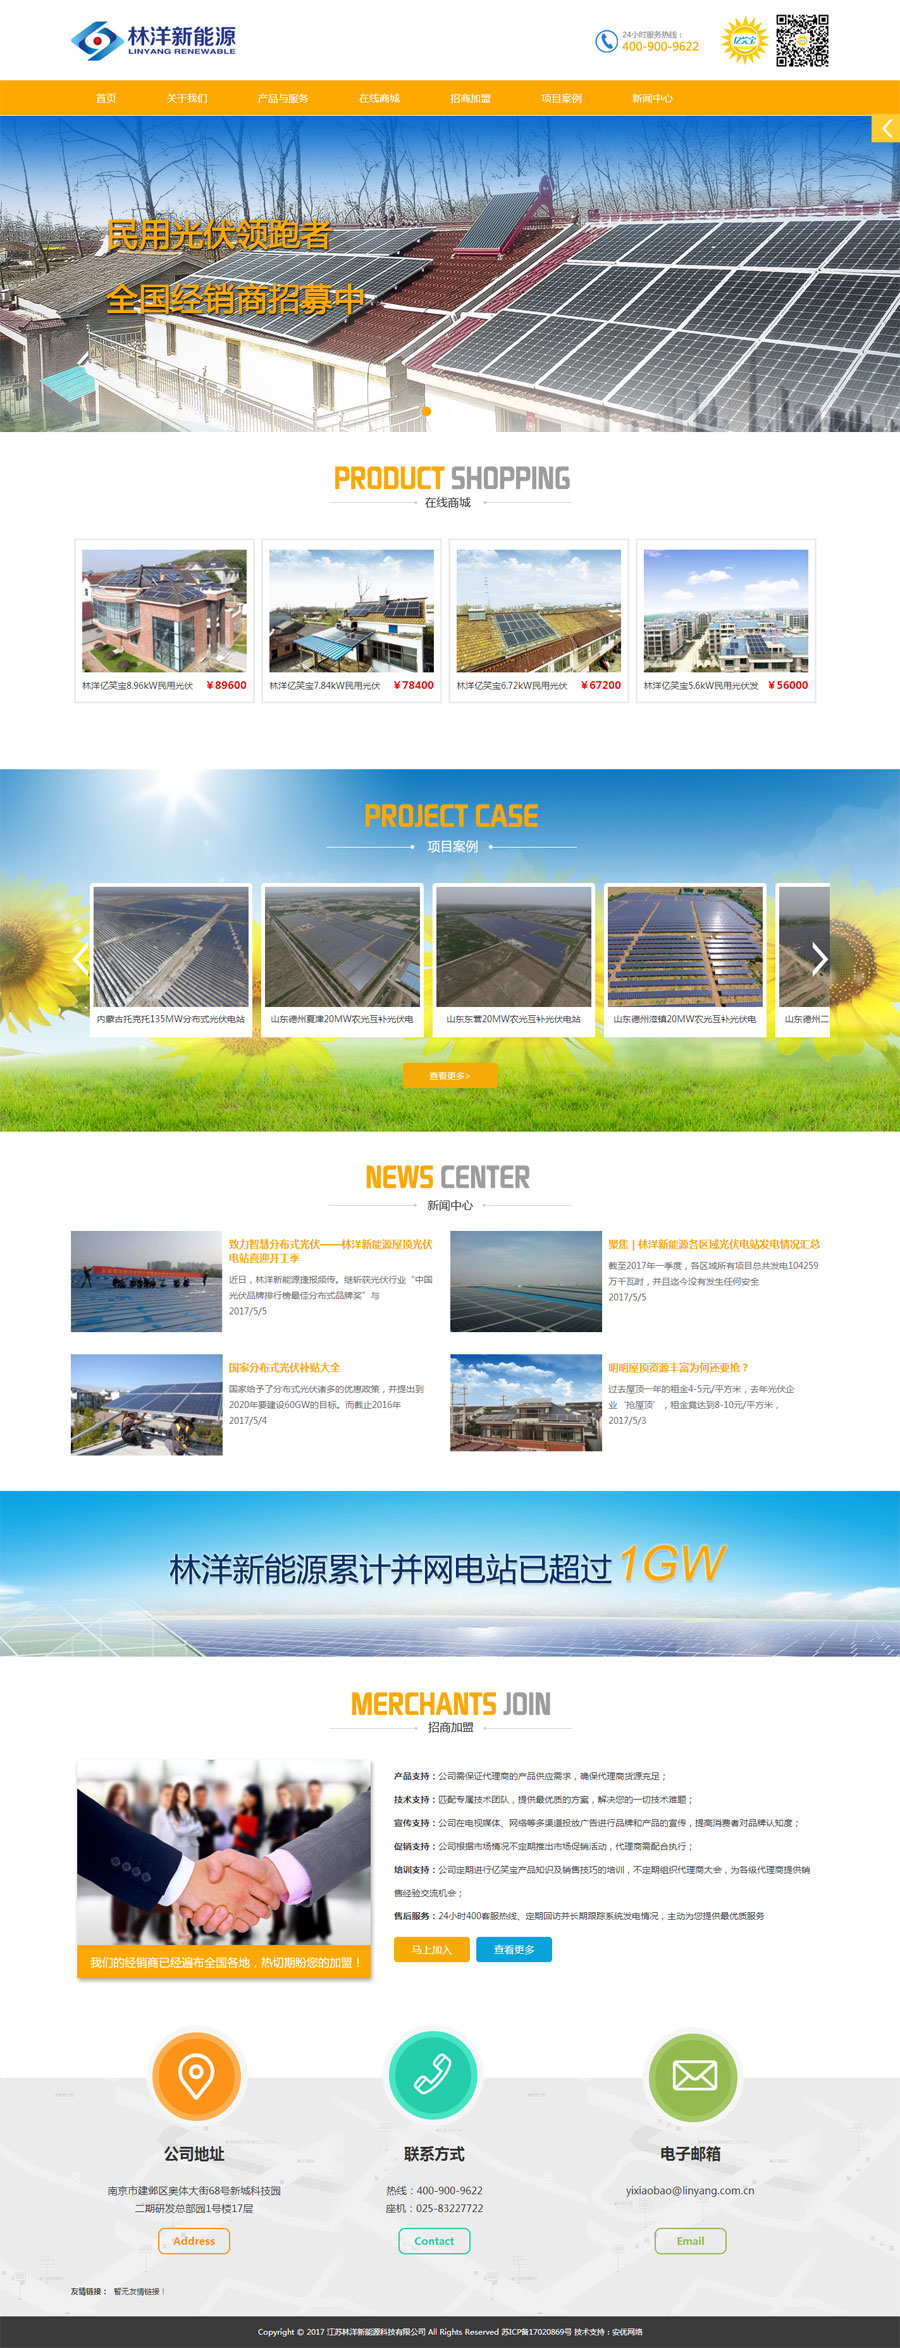 江苏林洋新能源科技有限公司